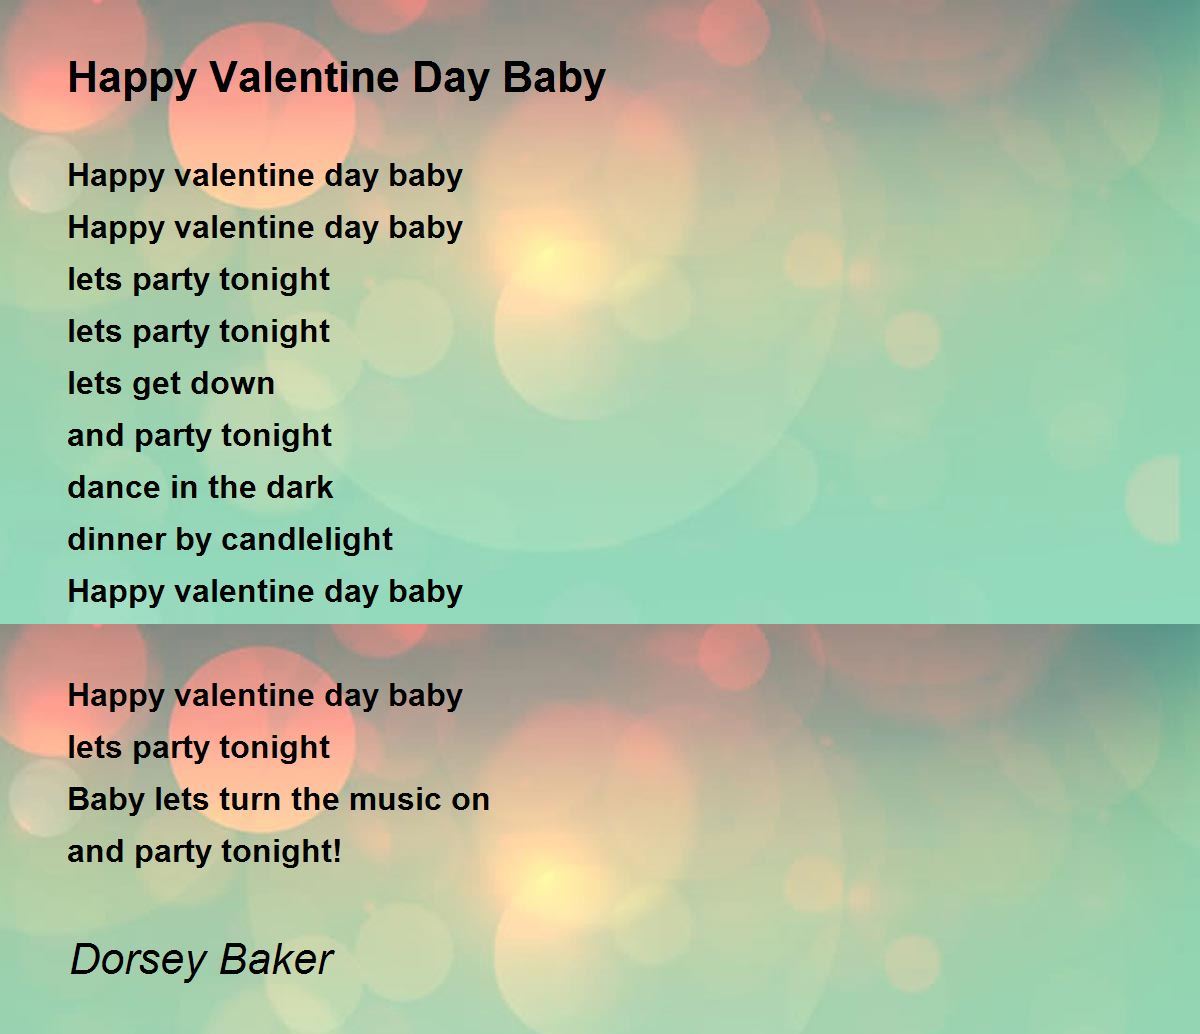 Happy Valentine Day Baby Poem